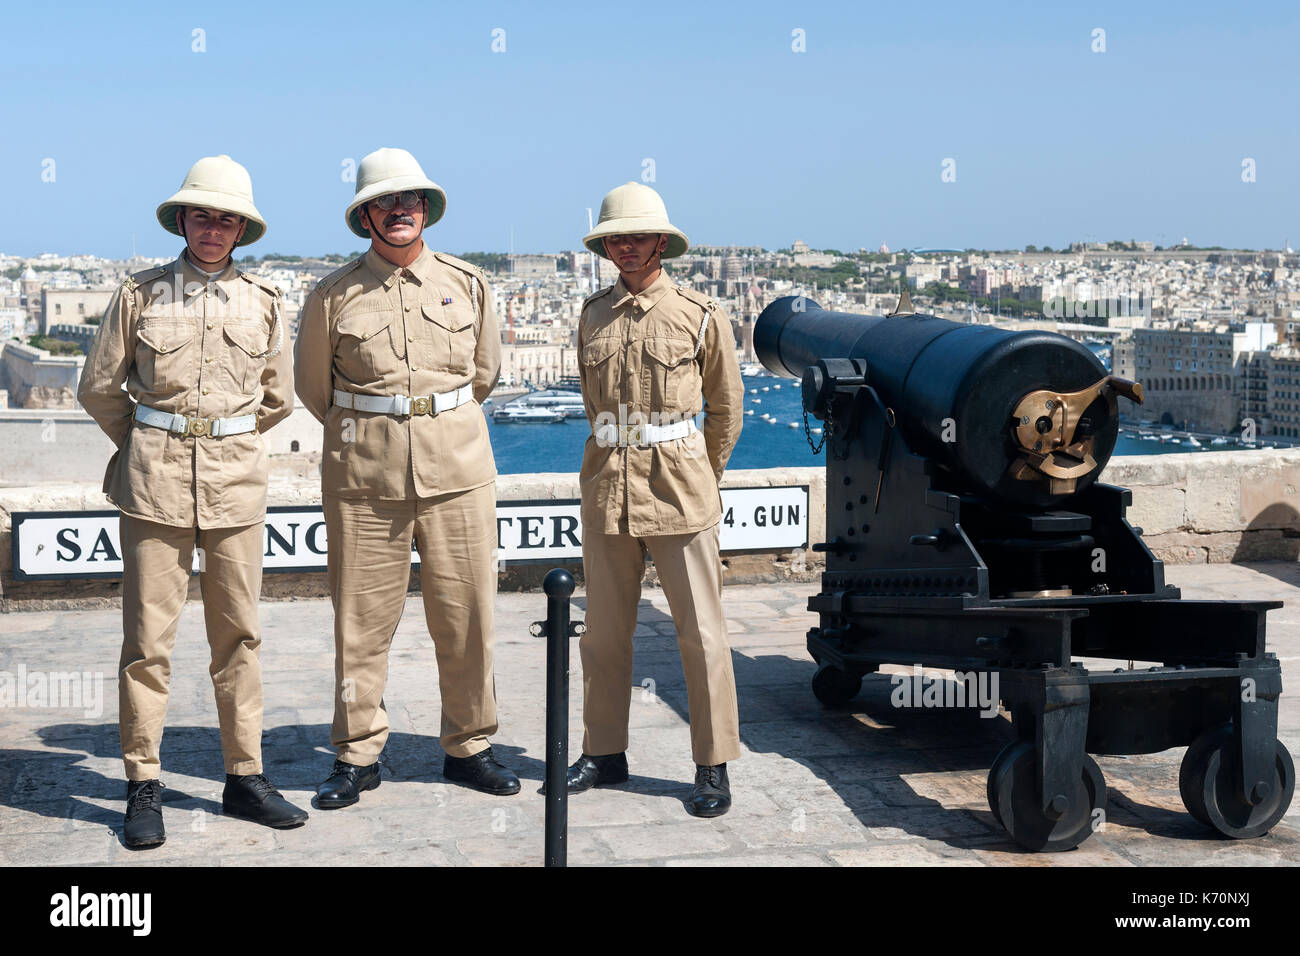 Das uniformierte Personal Der ehrenkompanie Batterie in Valletta, der Hauptstadt von Malta. Stockfoto